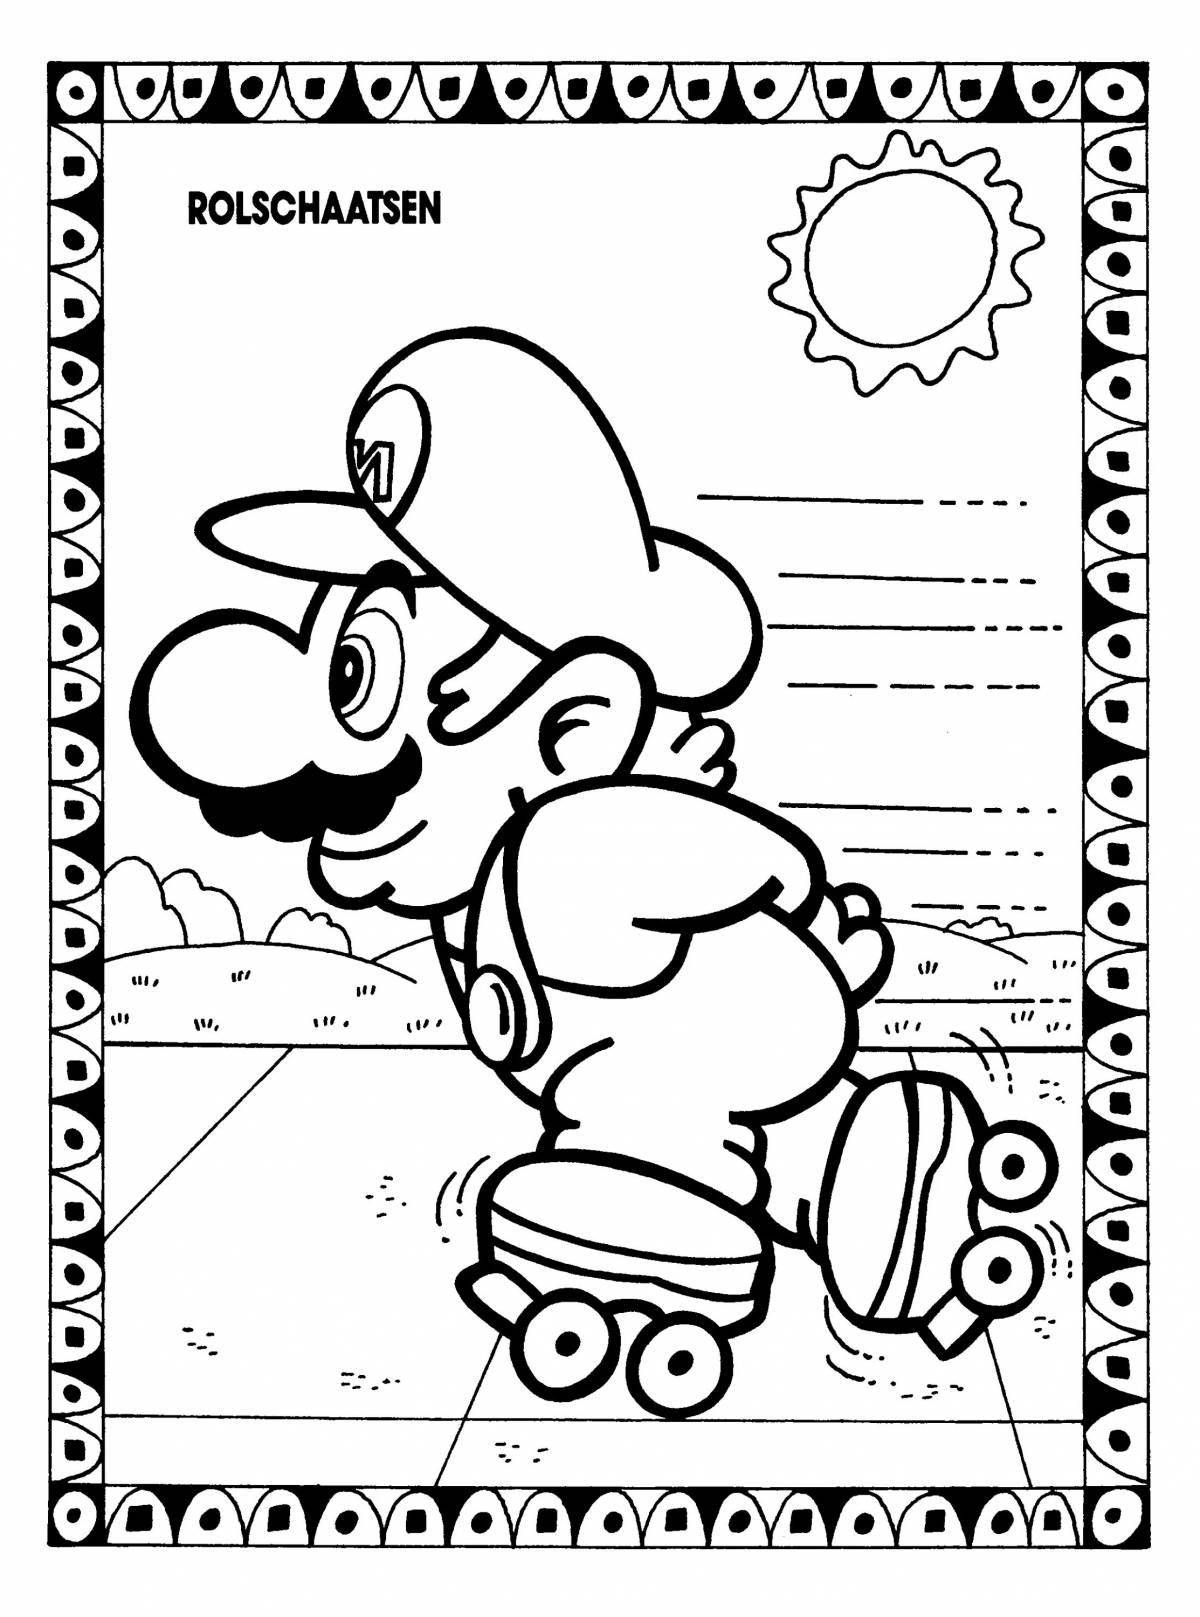 Mario sparkling mushroom coloring book